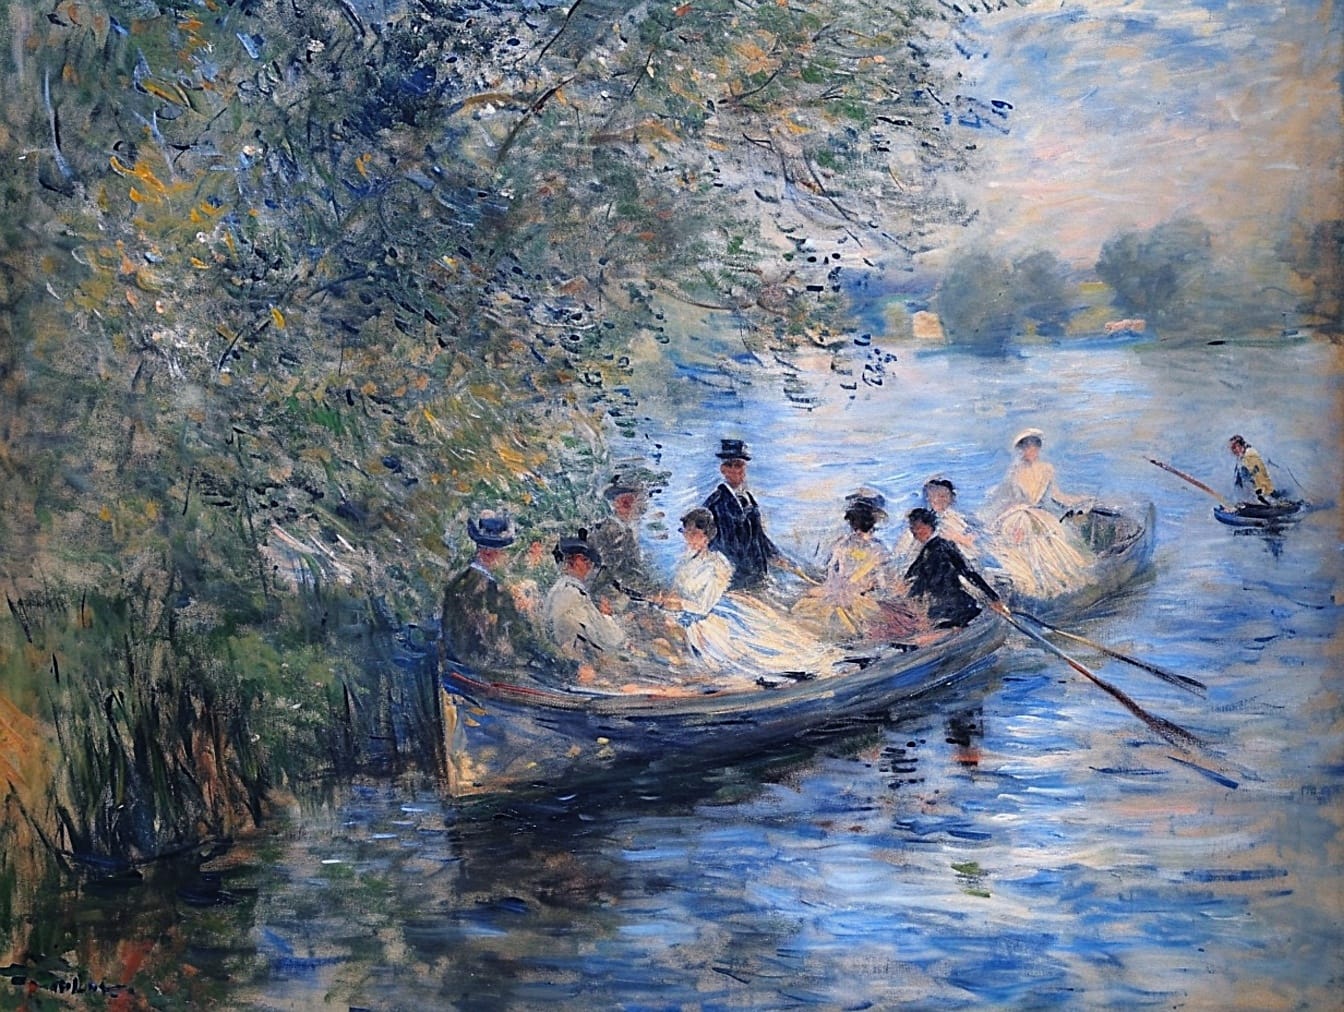 Pintura a óleo de um grupo de pessoas remando em um barco que retrata o estilo de vida de pessoas ricas no século 19